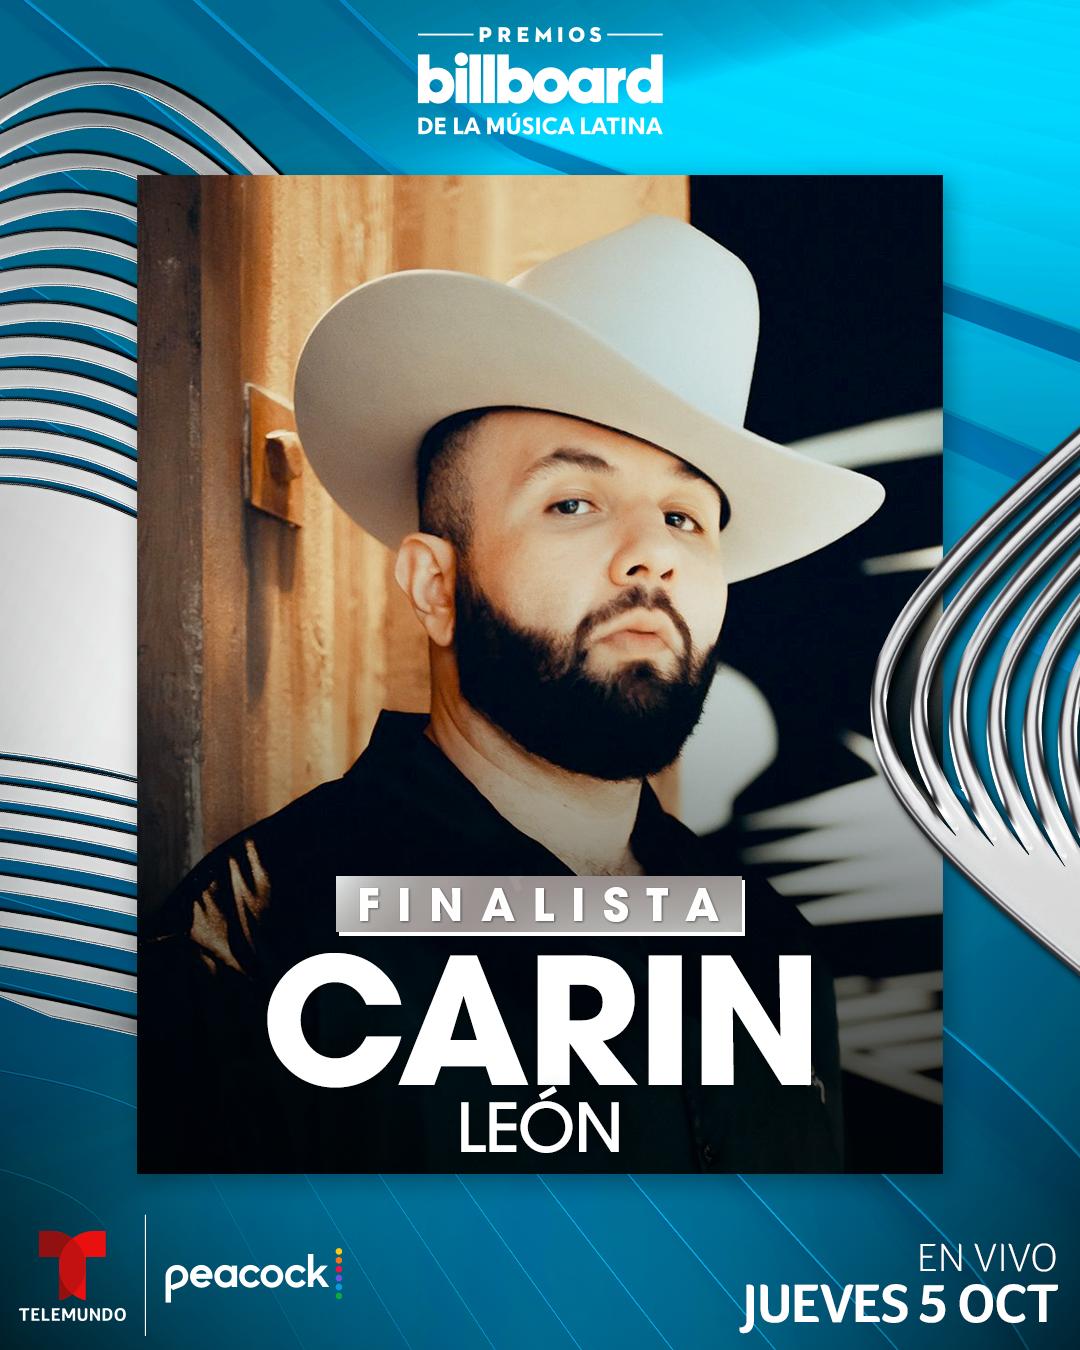 CARÍN LEÓN recibió 2 nominaciones a Premios Billboard 2023